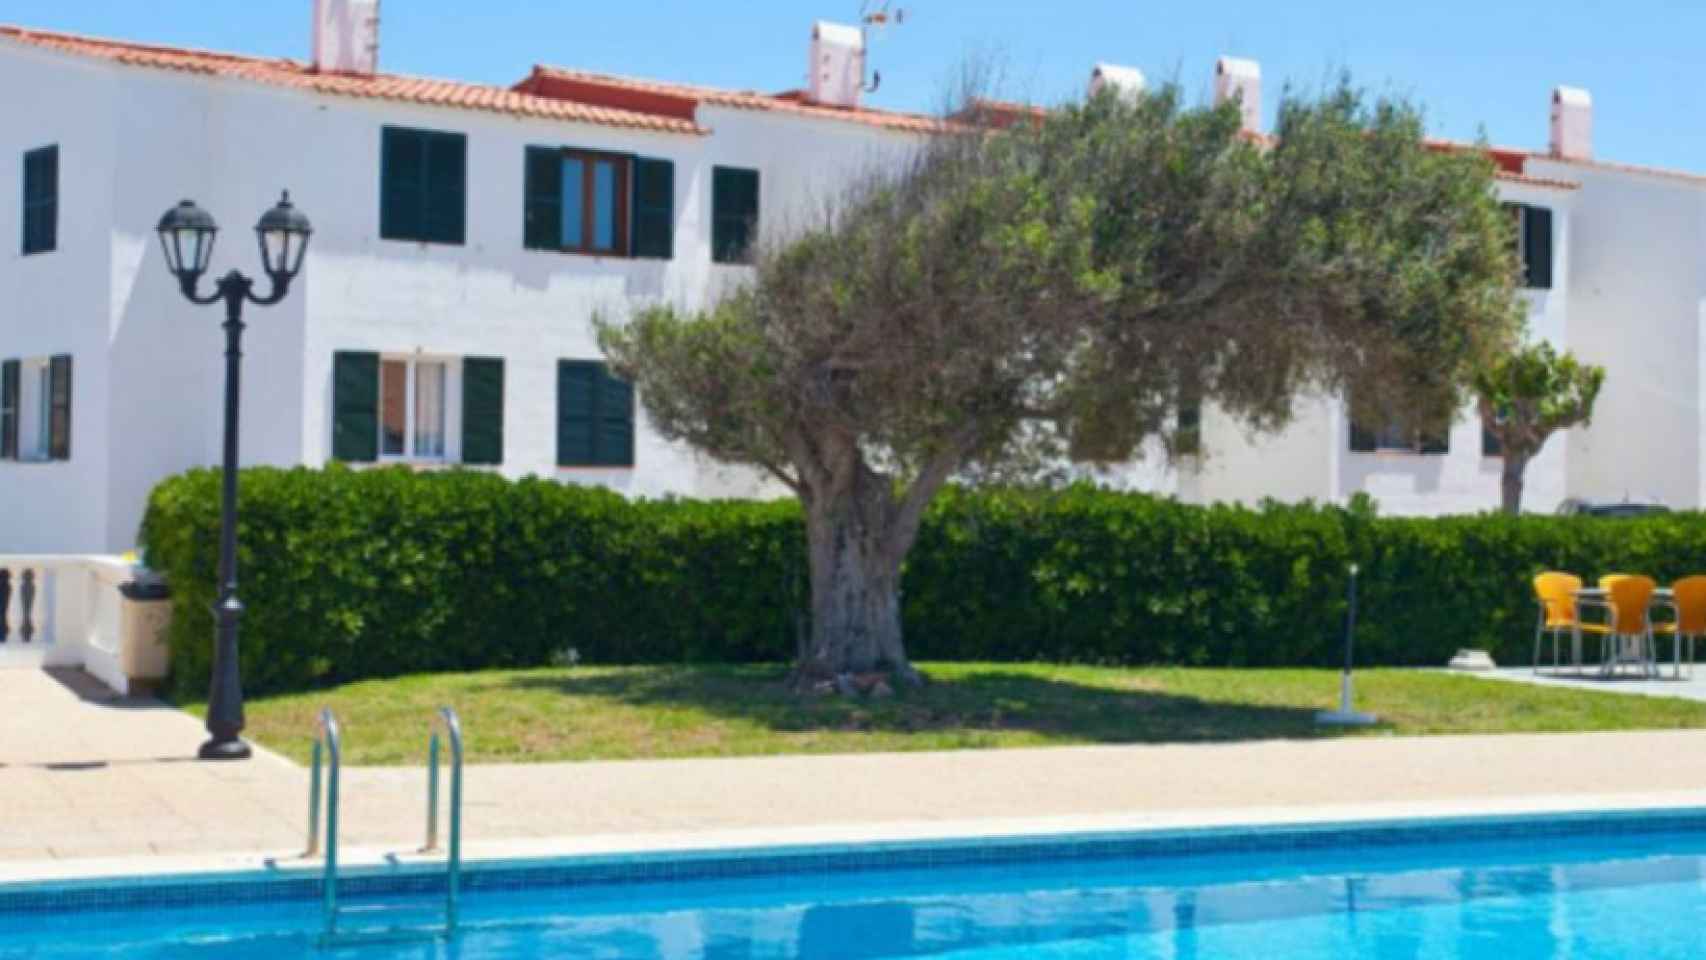 Fachada principal del aparthotel Sa Mirada del Arenal d'en Castell, en Menorca.